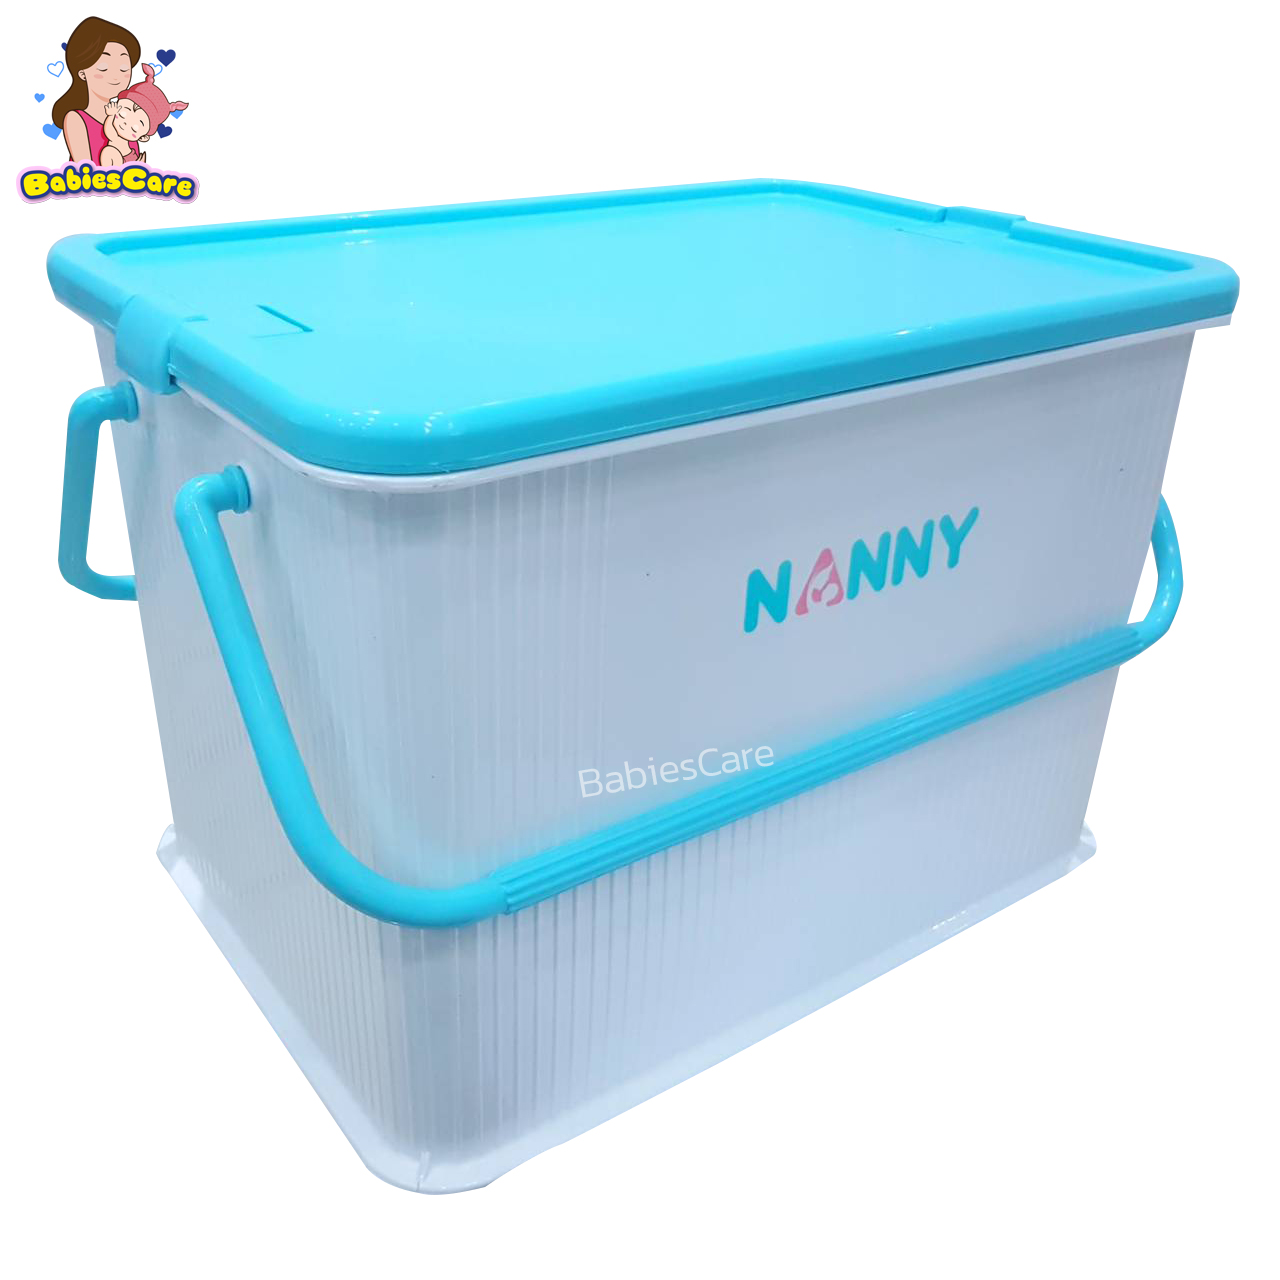 BabiesCare Nanny กล่องเก็บของอเนกประสงค์ ขนาดใหญ่ (N3040)กล่องใส่ของ ตะกร้าเตรียมคลอด มีหูหิ้ว มีฝาปิดล็อค ใส่เสื้อผ้าลูก